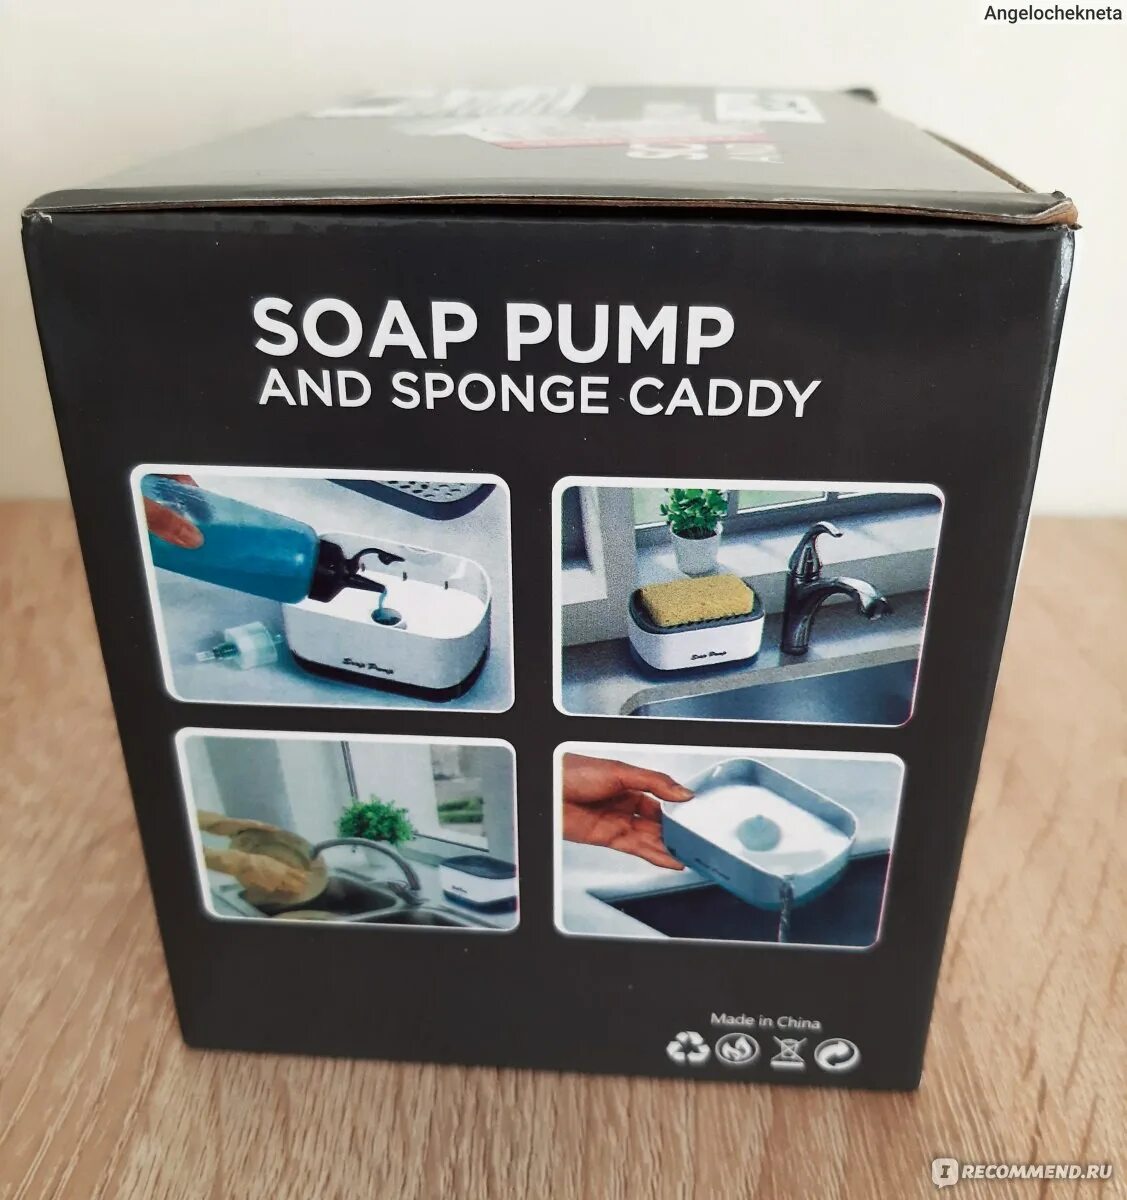 Soap Pump and Sponge Caddy. Сборка Soap Pump and Sponge Caddy. Soap Pump and Sponge Caddy инструкция. Soap Pump and Sponge Caddy комплектации. Sponge caddy